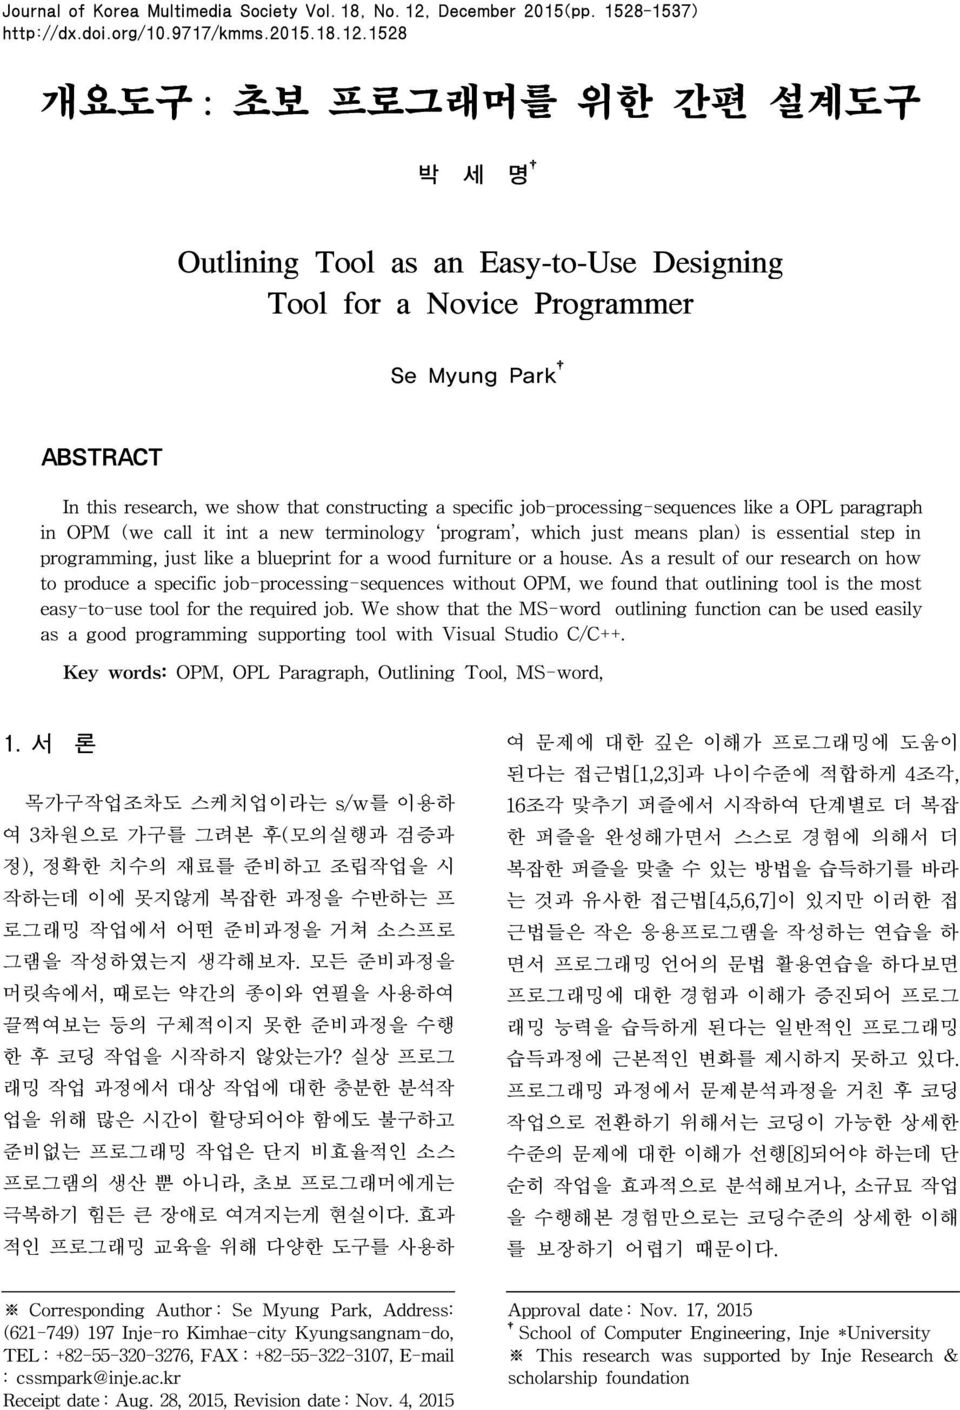 1528 개요도구 : 초보 프로그래머를 위한 간편 설계도구 박 세 명 Outlining Tool as an Easy-to-Use Designing Tool for a Novice Programmer Se Myung Park ABSTRACT In this research, we show that constructing a specific